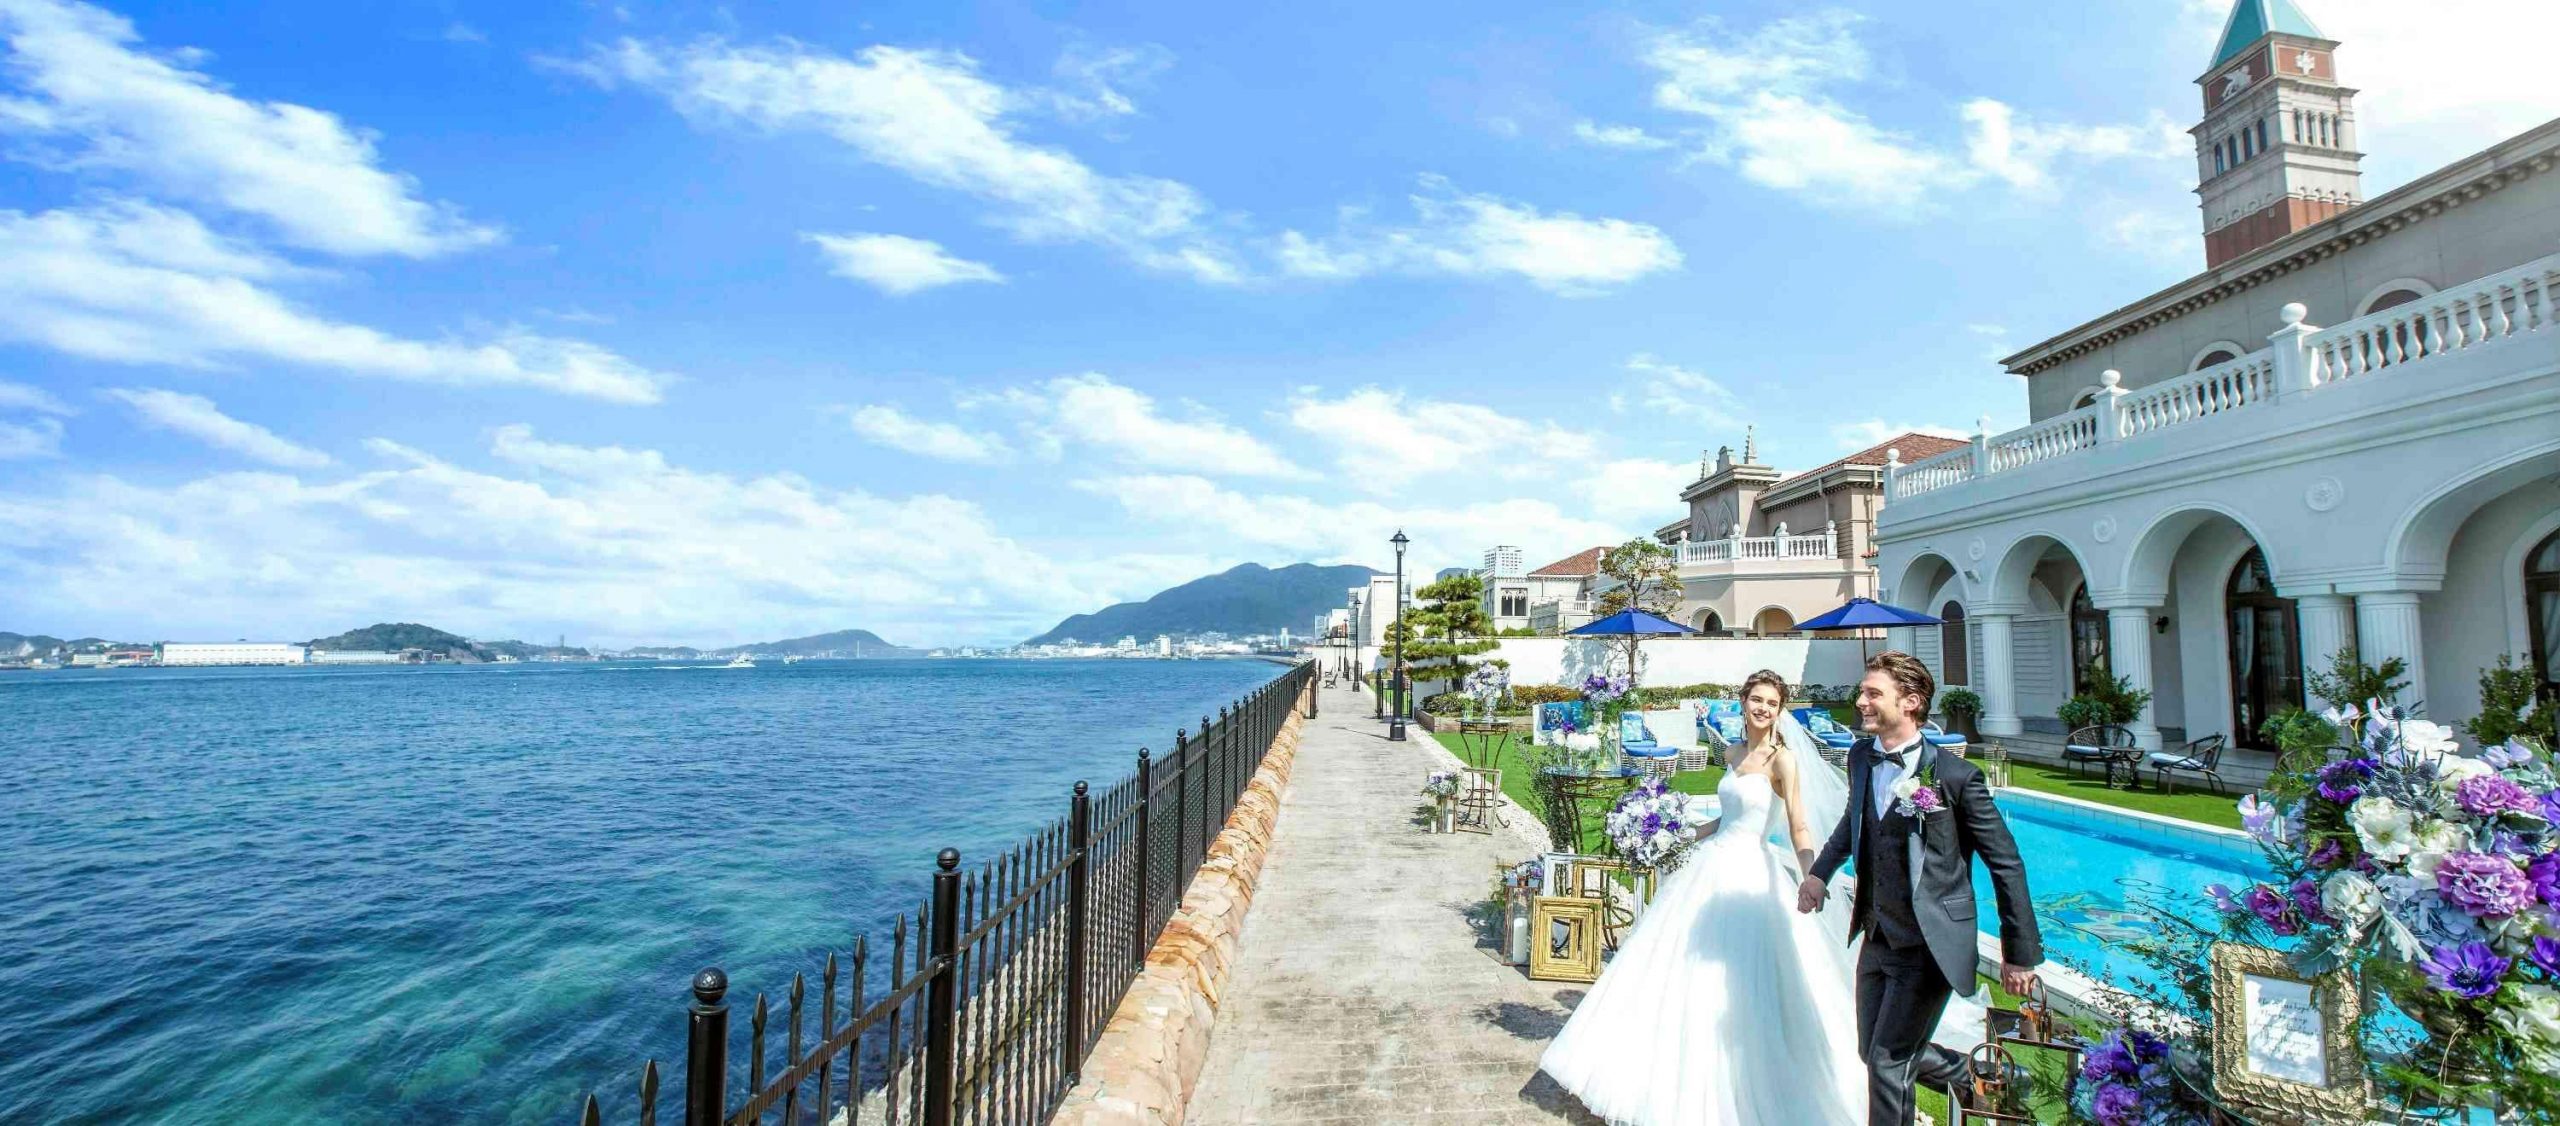 福岡の海が見える結婚式場 口コミで人気の結婚式場10選 ウエディングポート